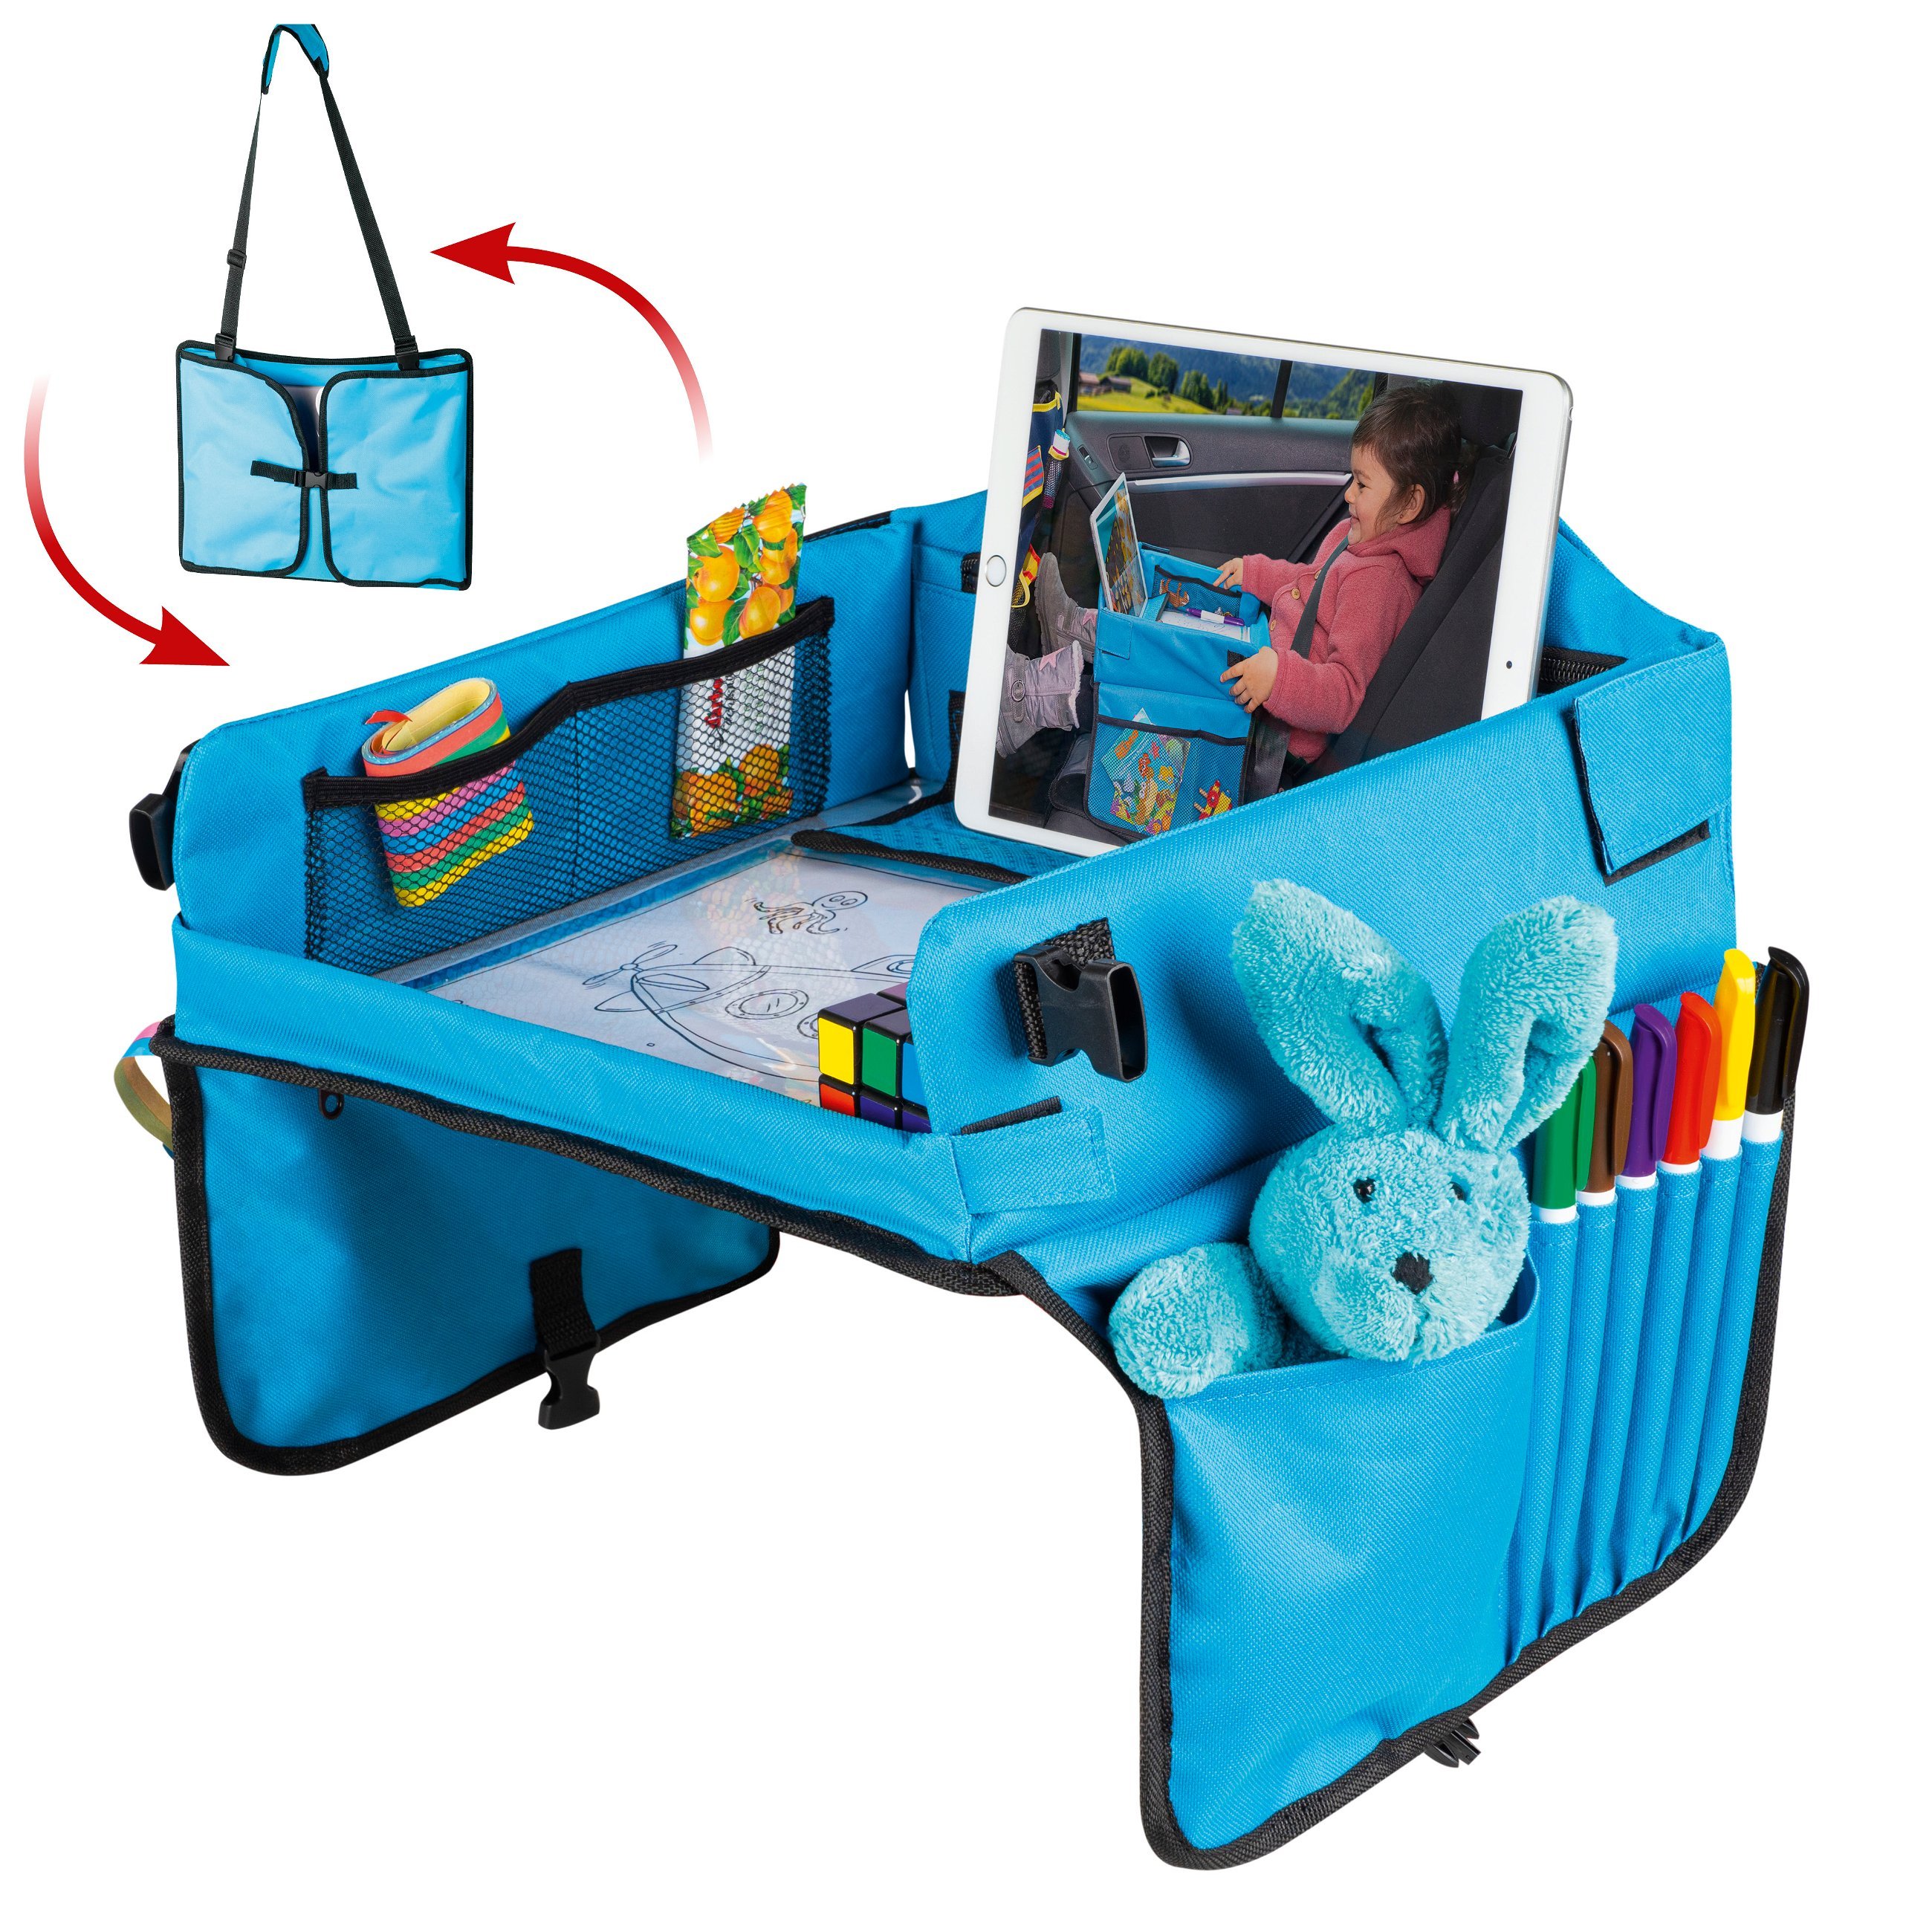 Kinder-Reisespieltisch-Auto mit Tablethalterung blau